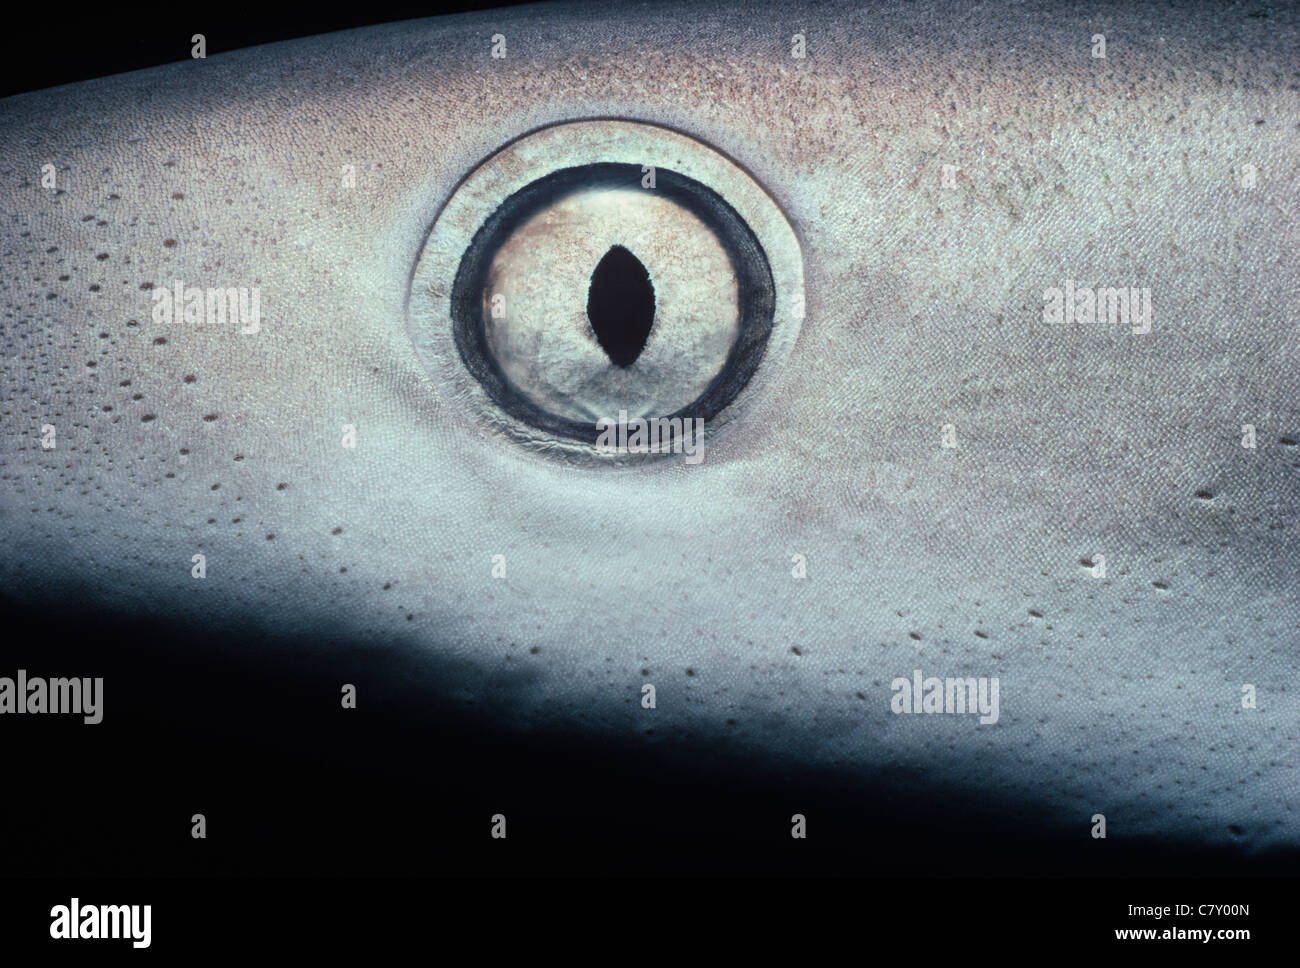 Oeil de Requin citron (Negaprion brevirostris), Bimini, Bahamas - Mer des Caraïbes Banque D'Images